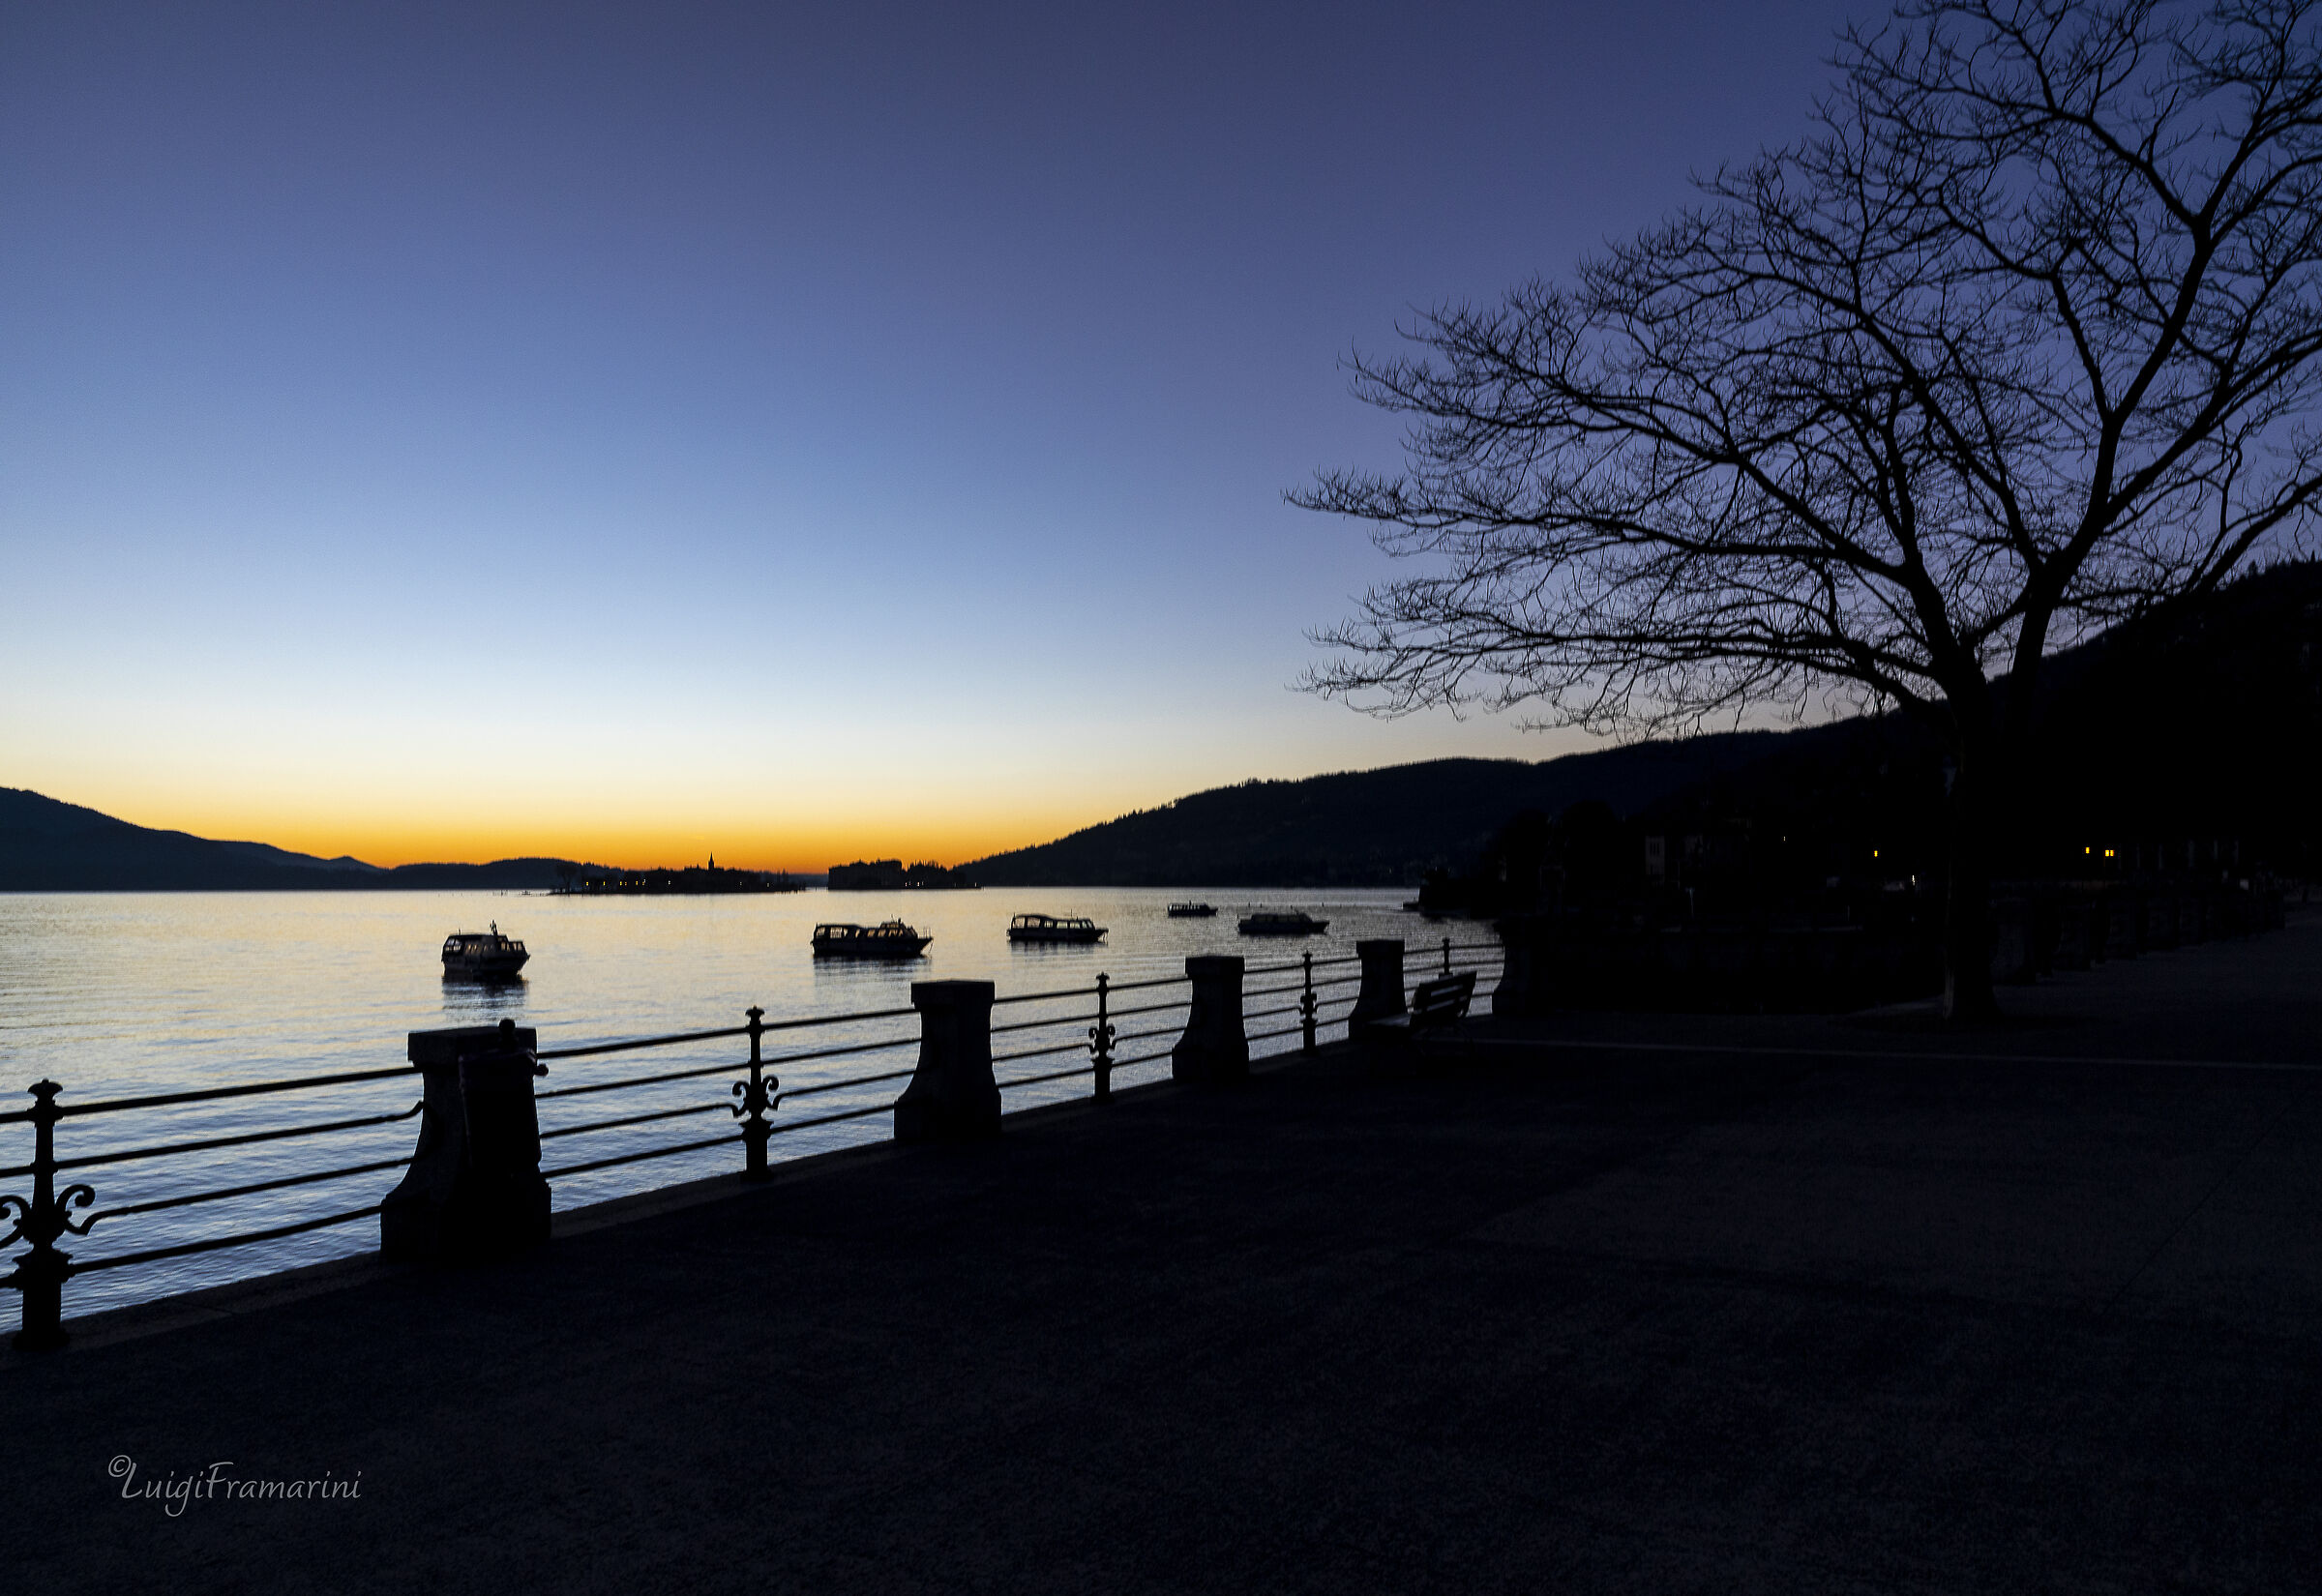 Prima luce sul lago Maggiore_1 (Baveno)...